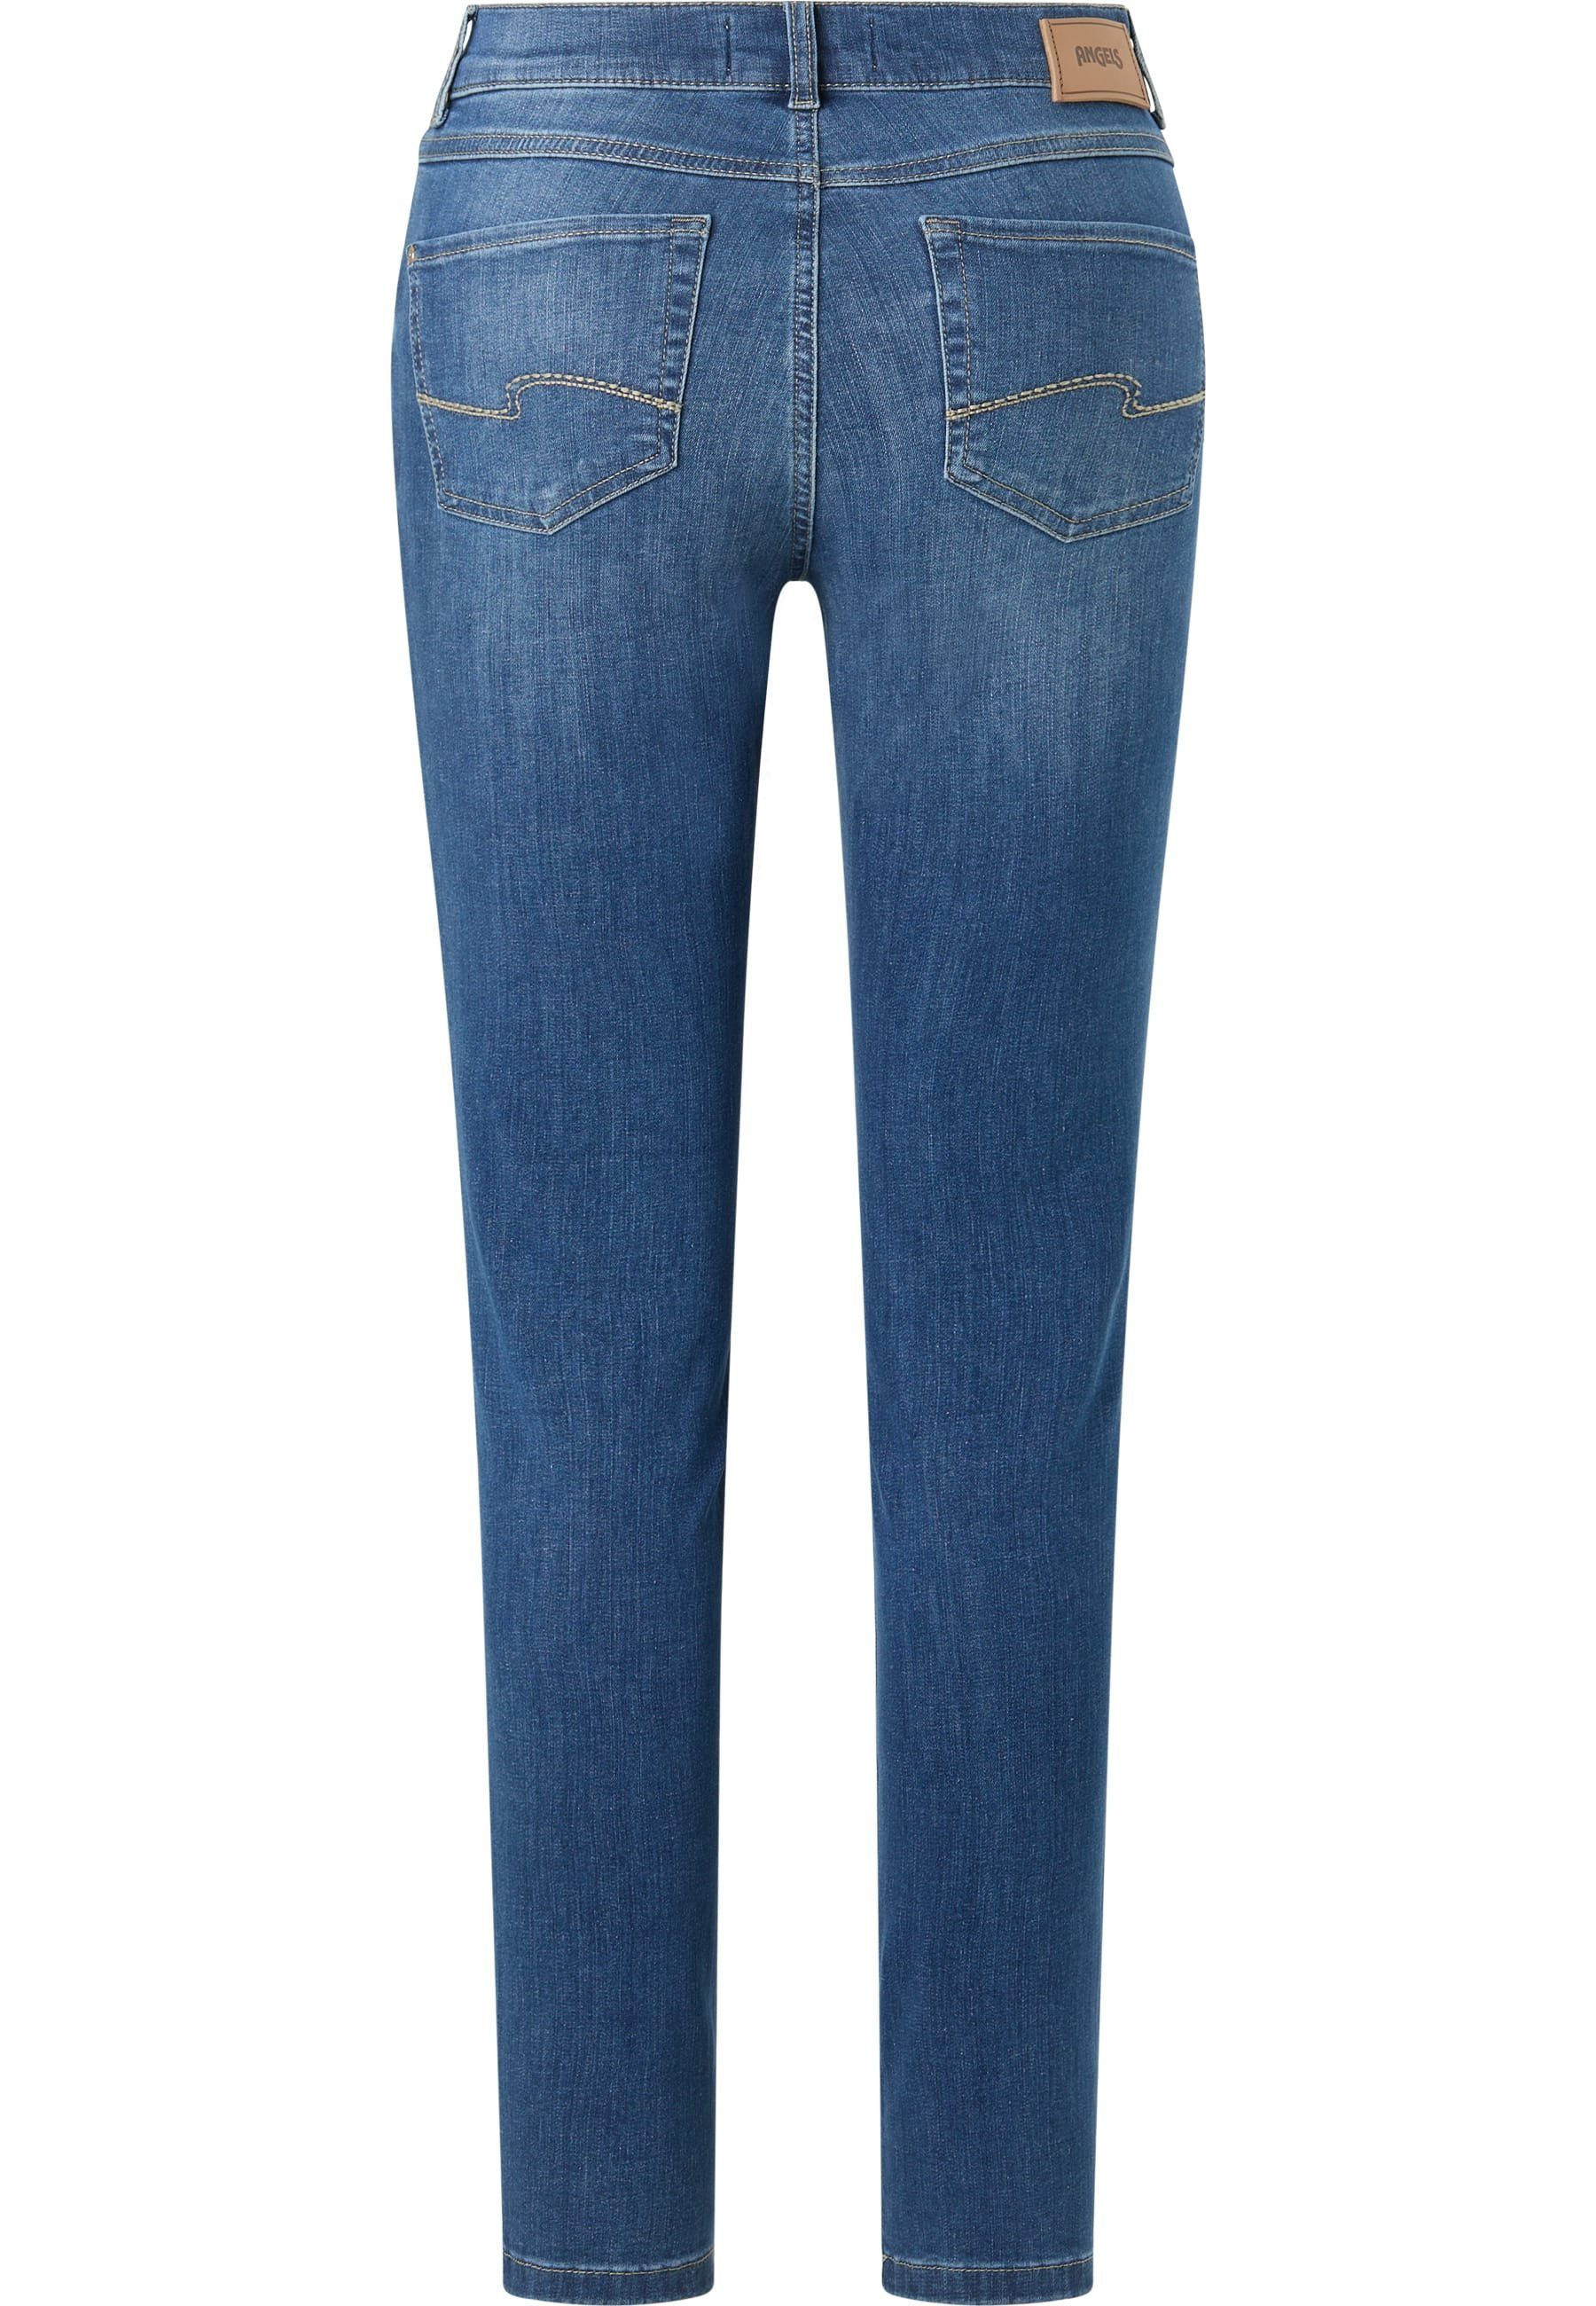 ANGELS Slim-fit-Jeans Denim Jeans authentischem blau Skinny Label-Applikationen mit mit